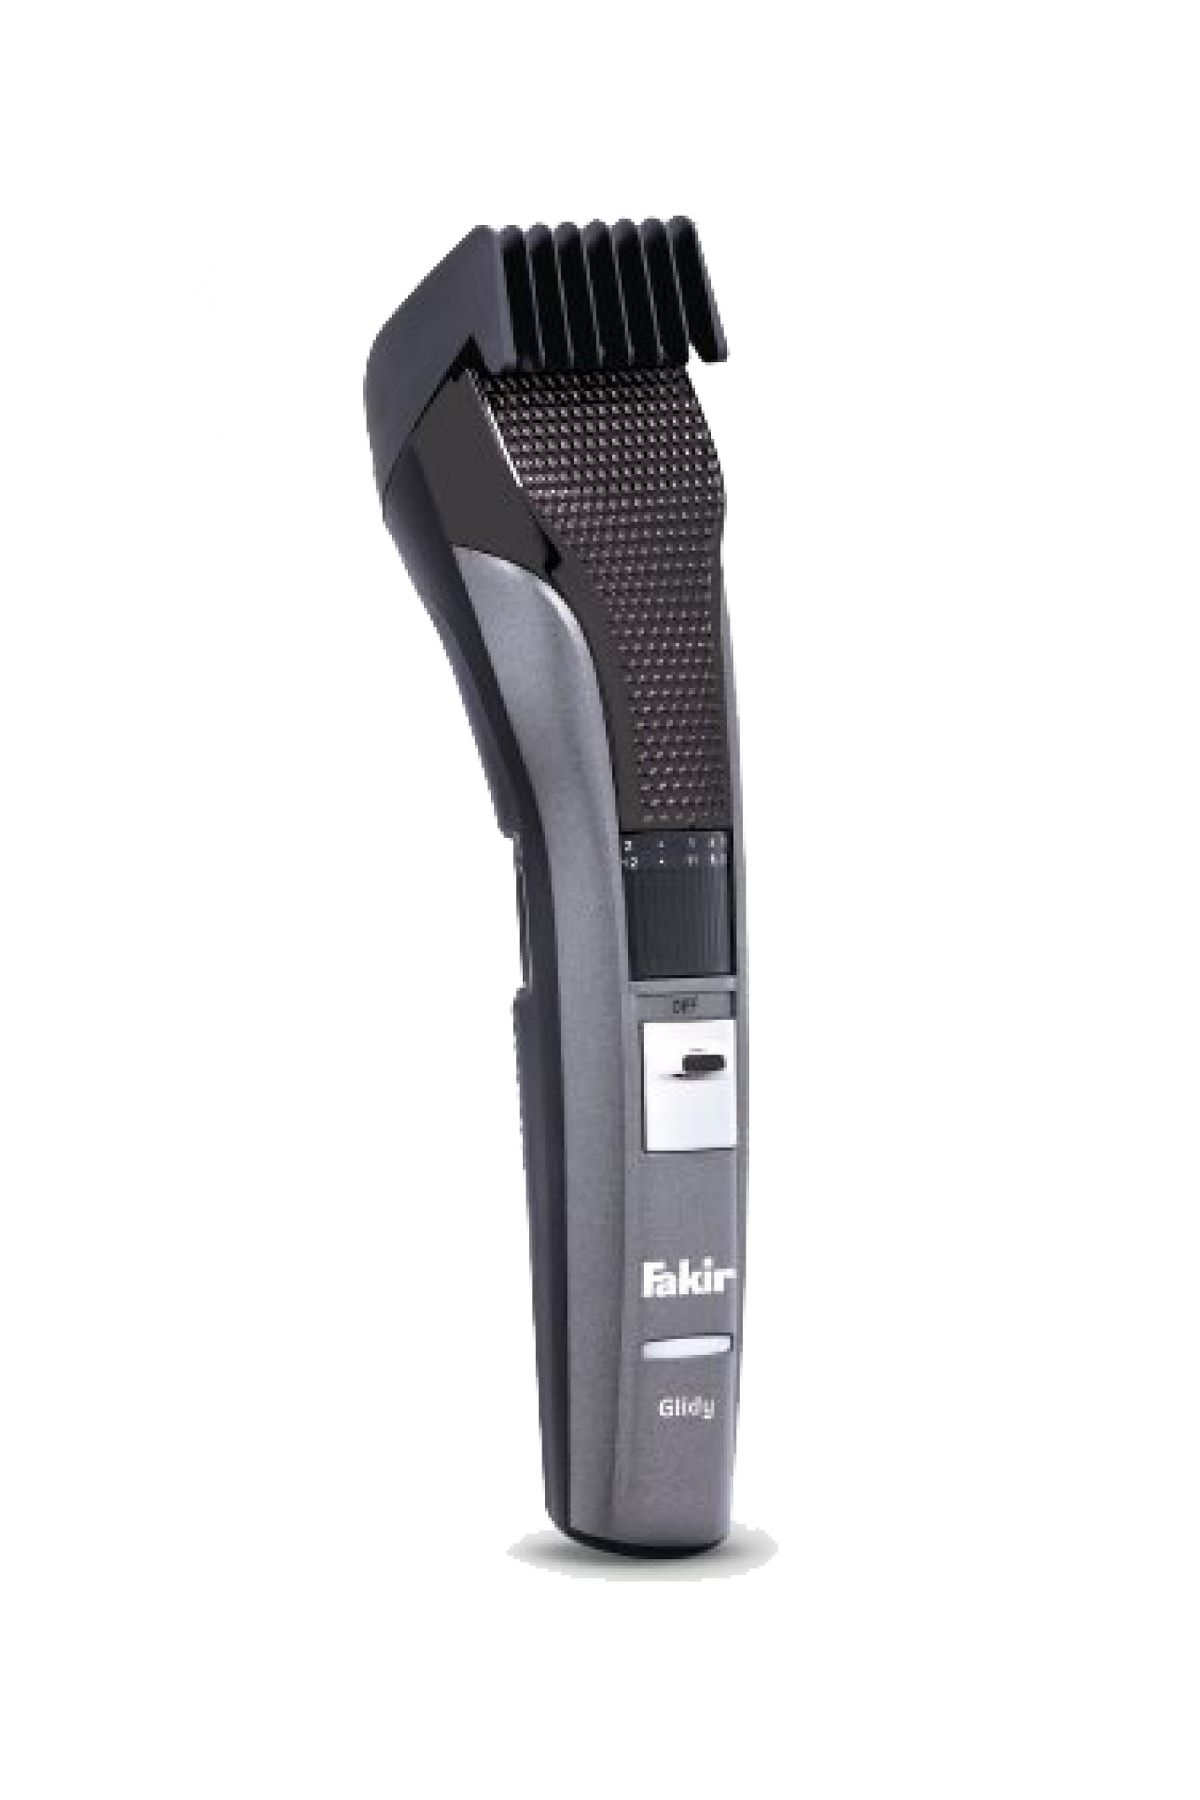 Fakir 1-3 Glidy Tıraş Makinesi Erkek Bakım Seti Saç Sakal Kesme Yok Kuru Resmi Distribütör Garantili Şarj